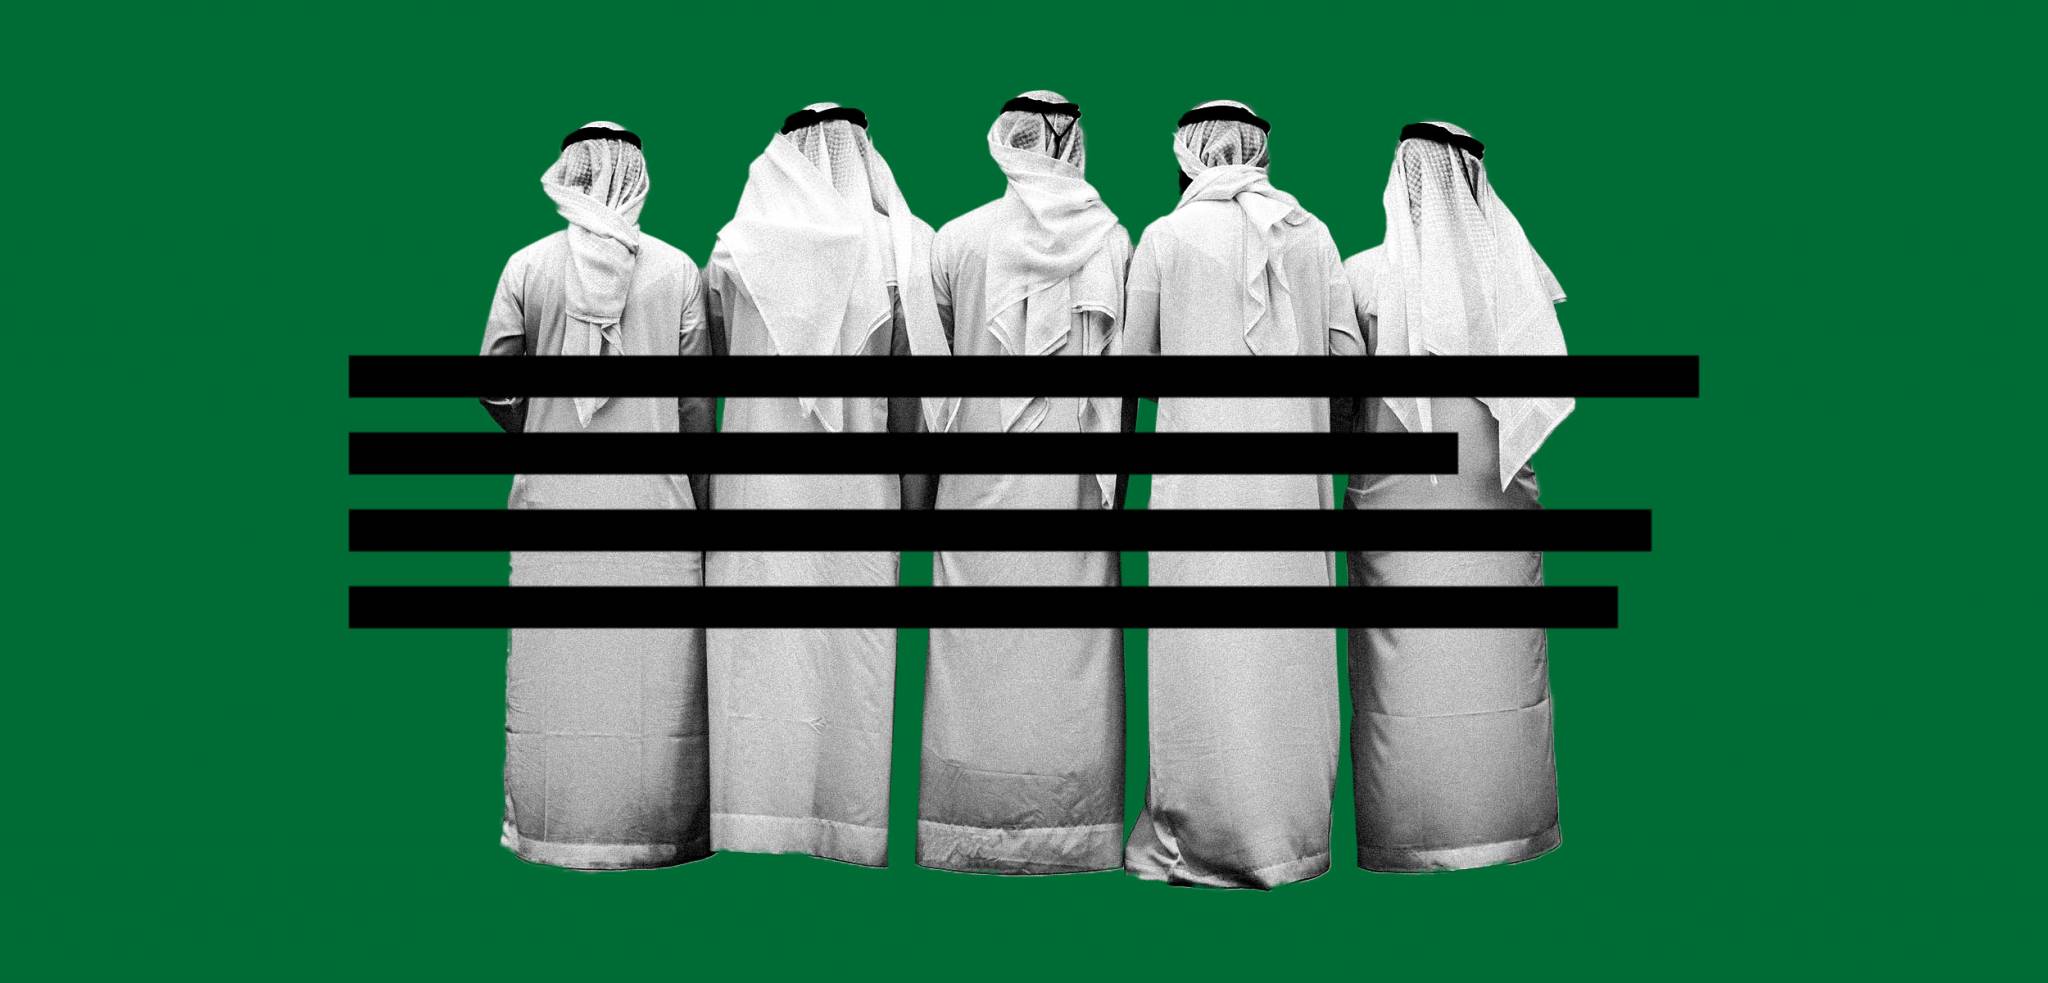 ممنوع ارتداء ملابس عليها صور تخدش الحياء لائحة سعودية للحفاظ على الذوق العام رصيف 22